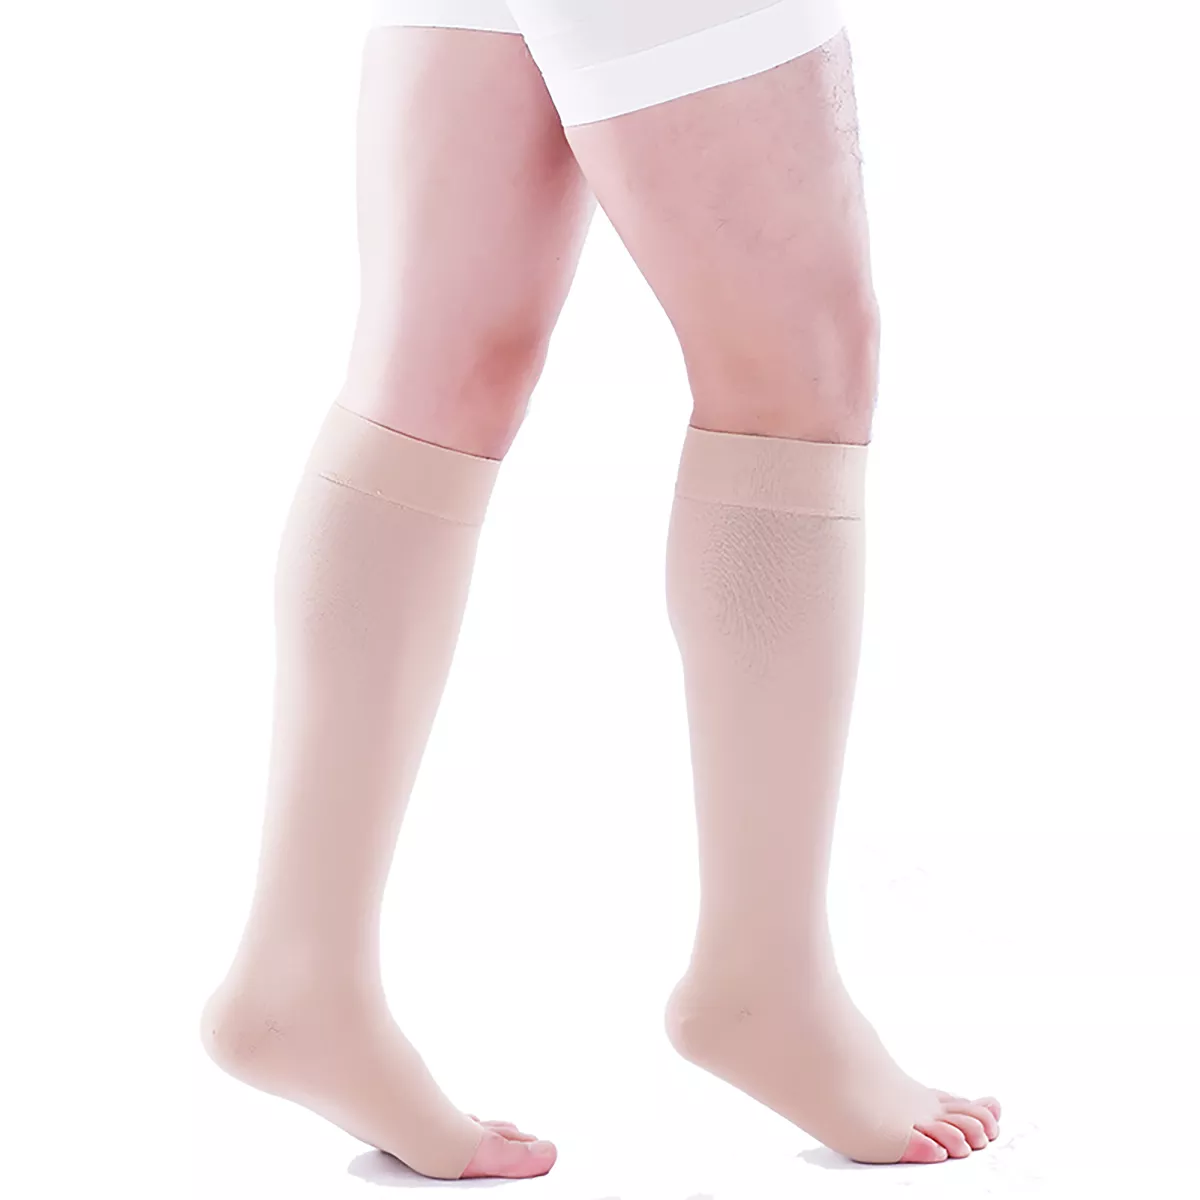 Varcoh ® 40-50 mmHg Men Knee High Open Toe Compression Socks Beige